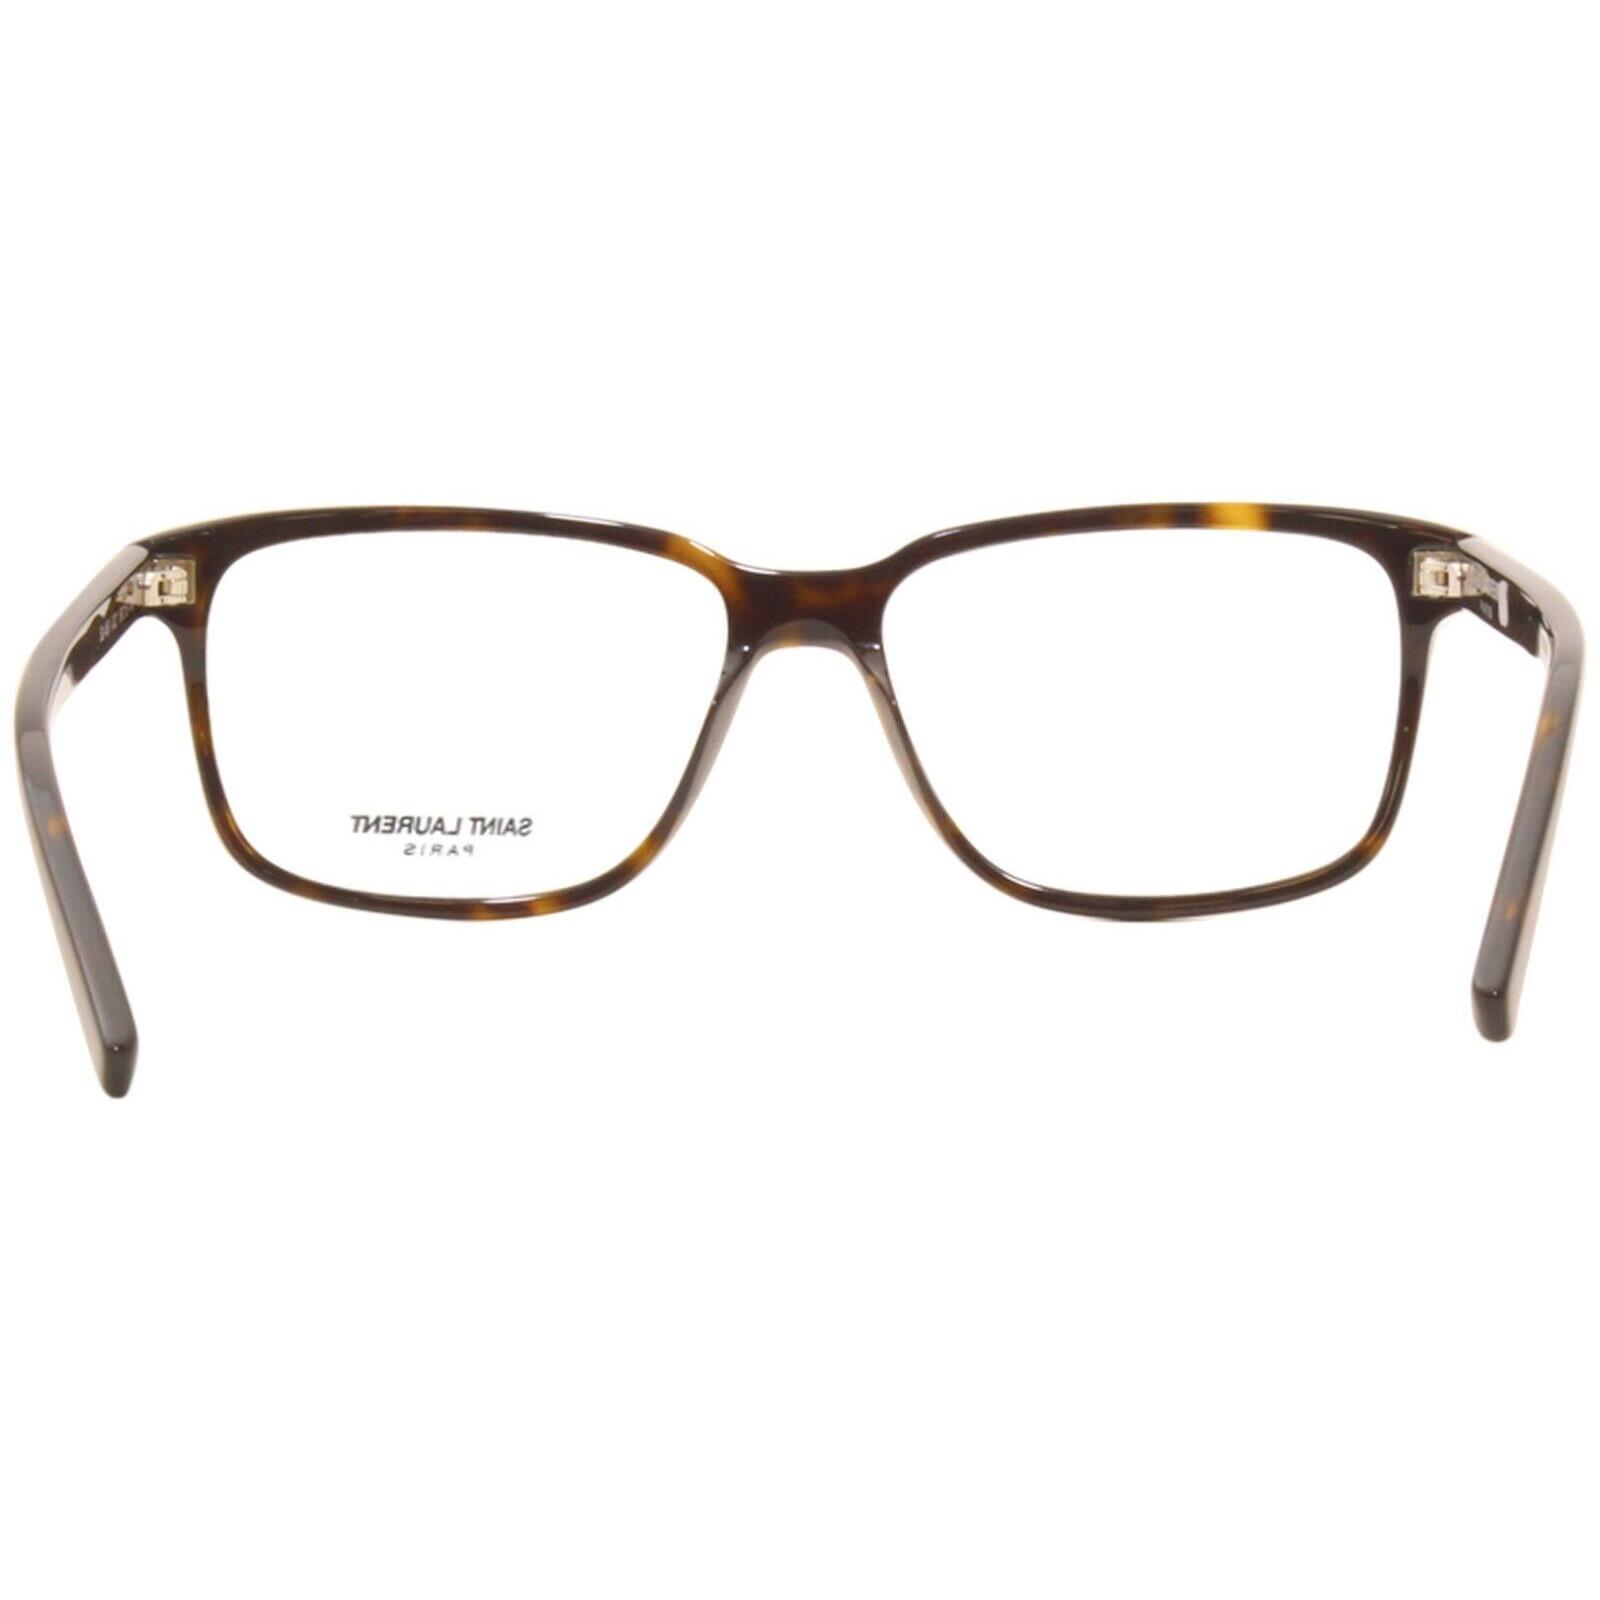 Yves Saint Laurent eyeglasses Saint Laurent - Havana Frame 2